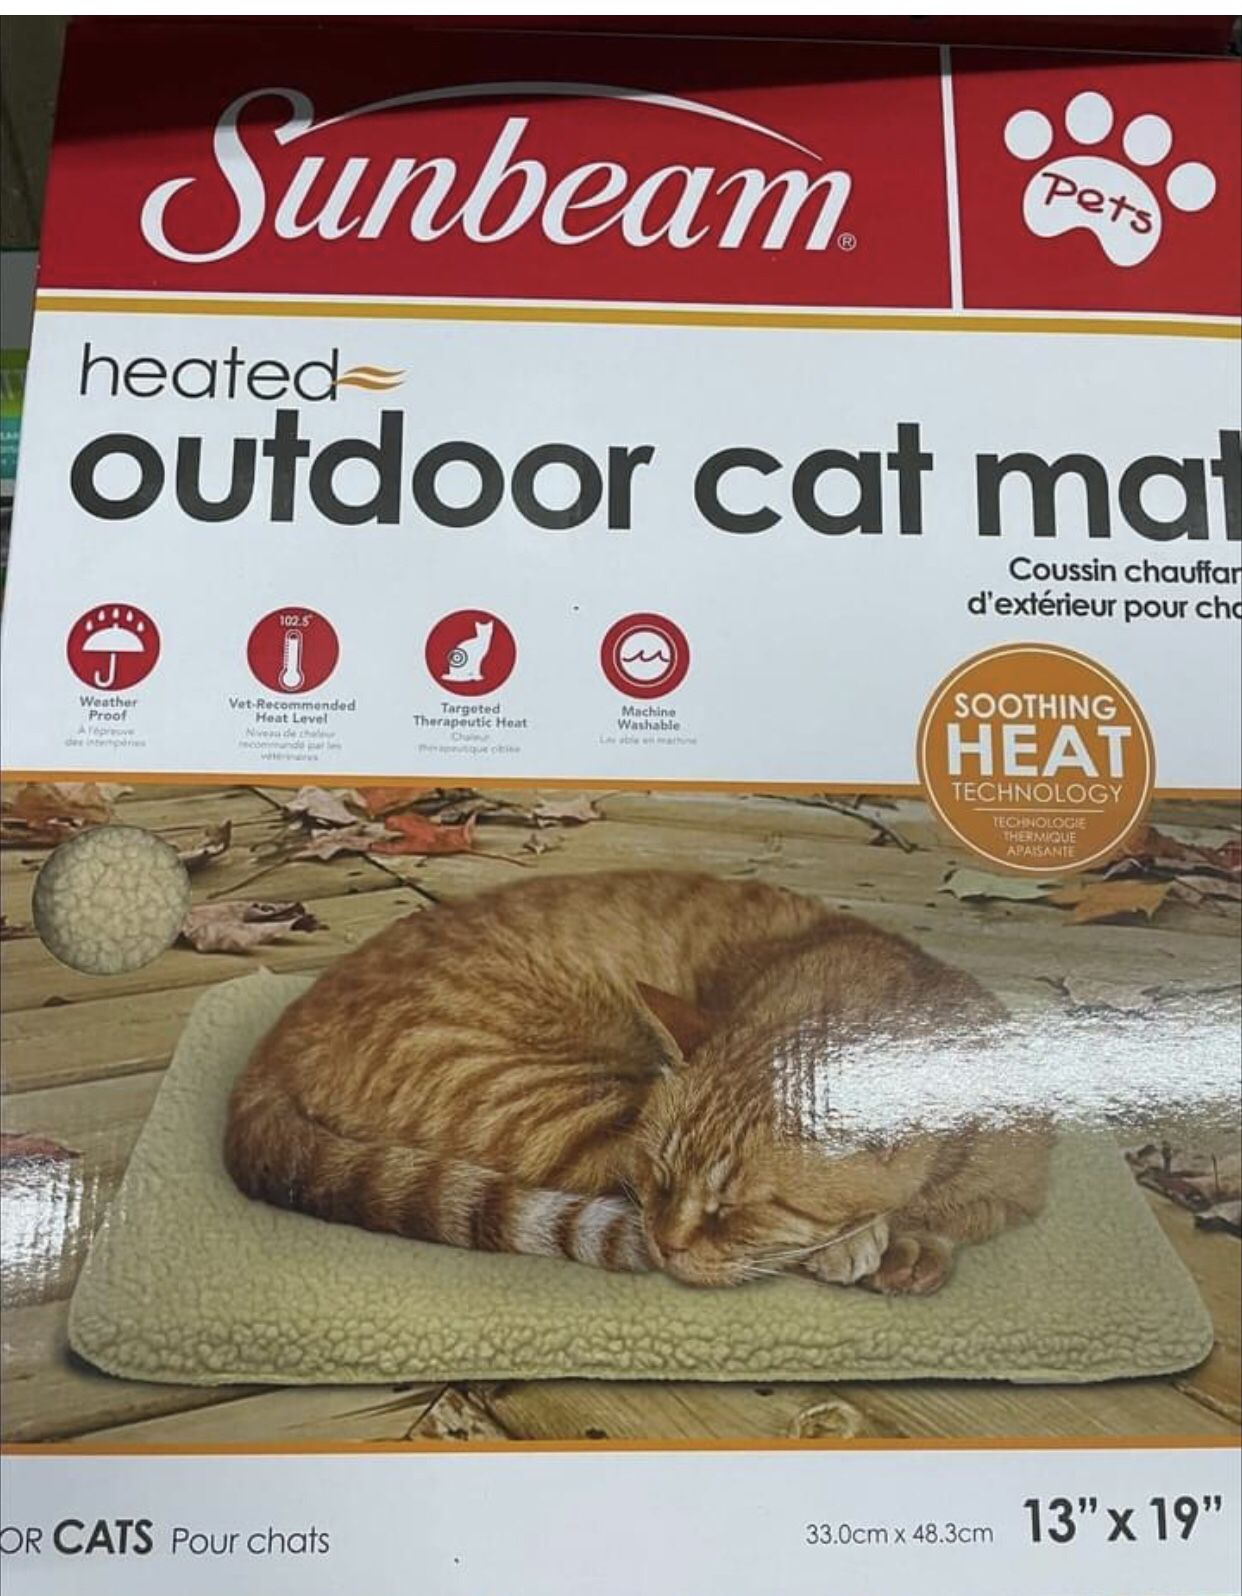 Outdoor Heated Cat Mat